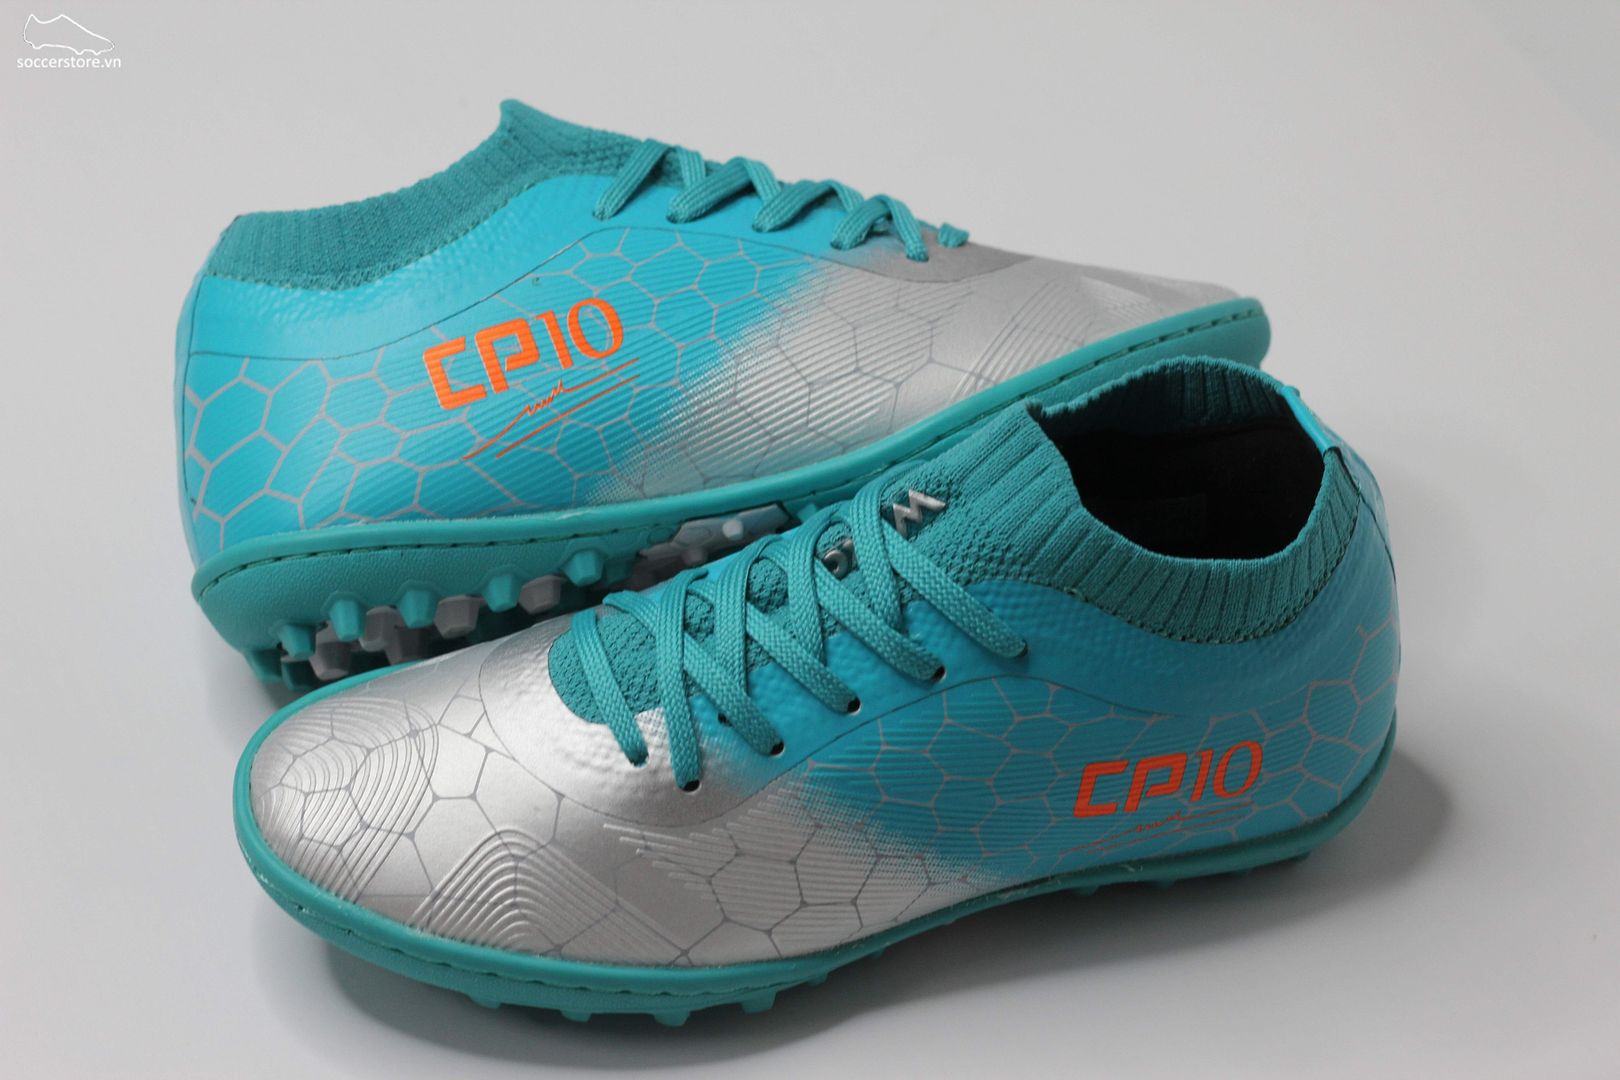 Giày bóng đá trẻ em Wika CP10 màu xanh bạc